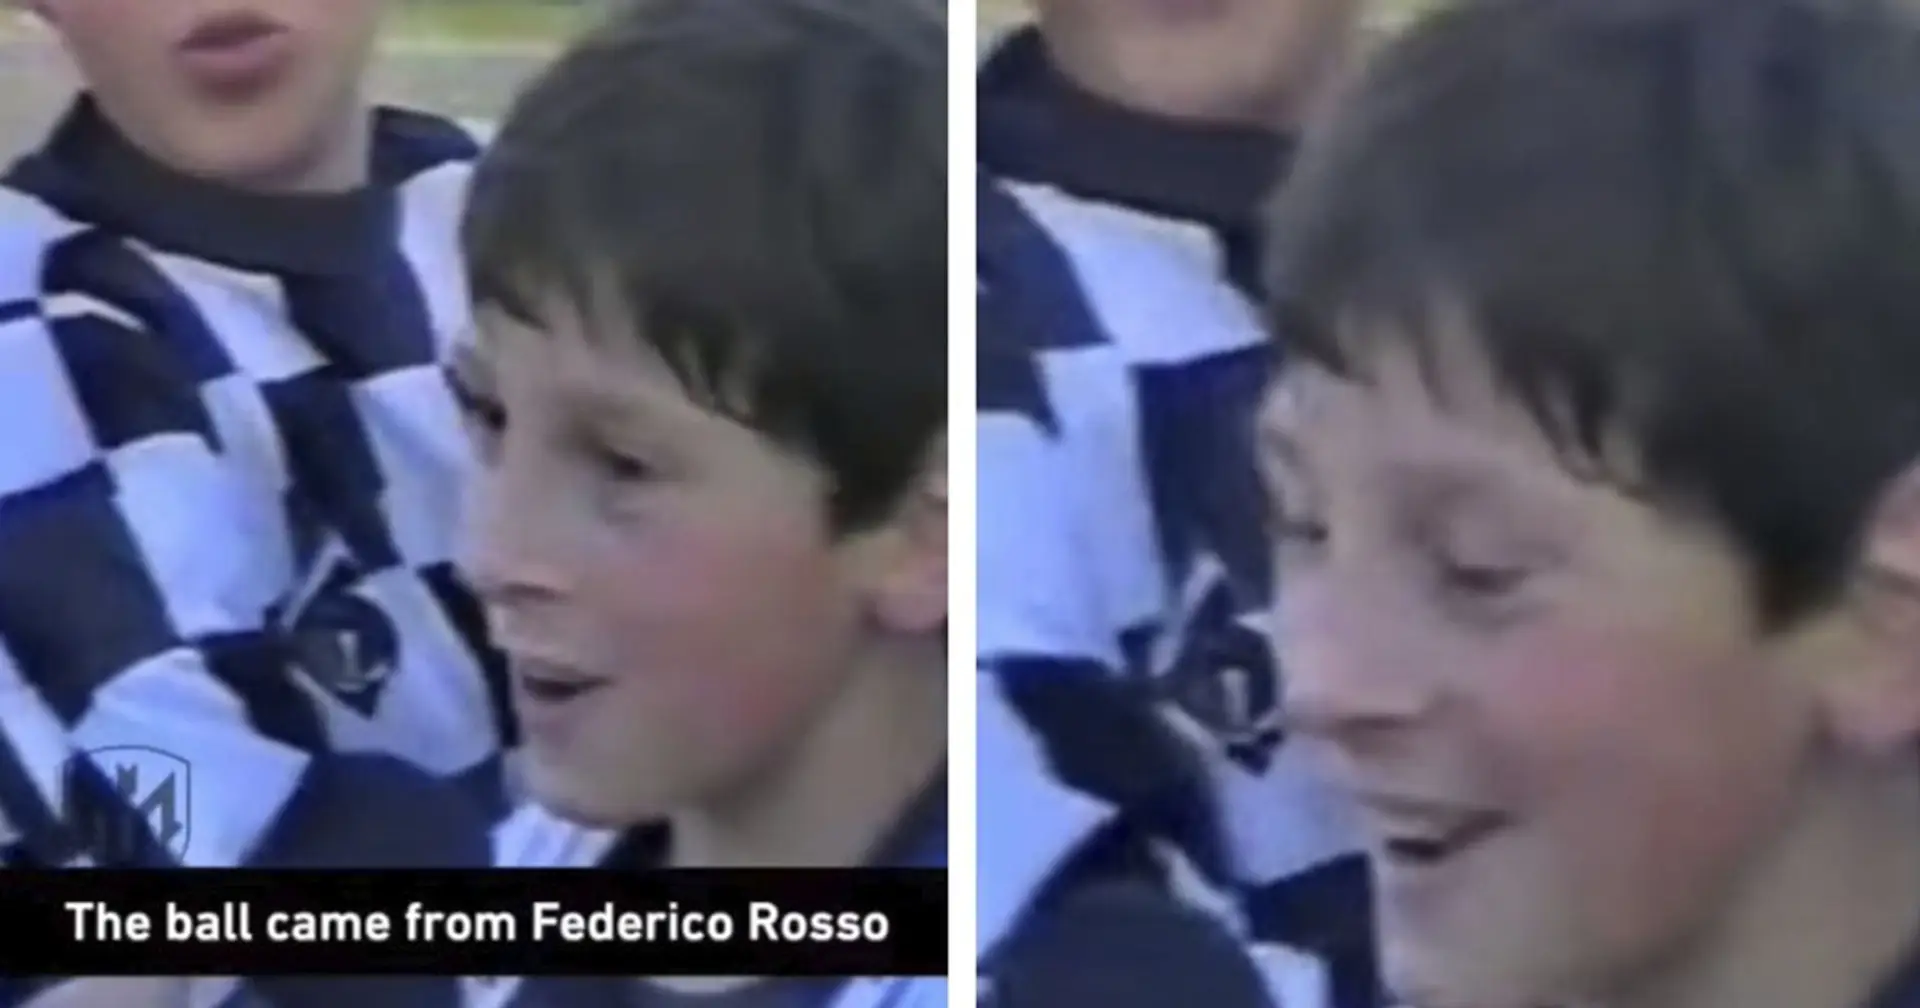 Mit 10 Jahren gab Messi sein erstes Interview: Leo erzielte einen Doppelpack und widmete ihn "seinem Vater, seinem Onkel und seiner ganzen Familie" ❤️